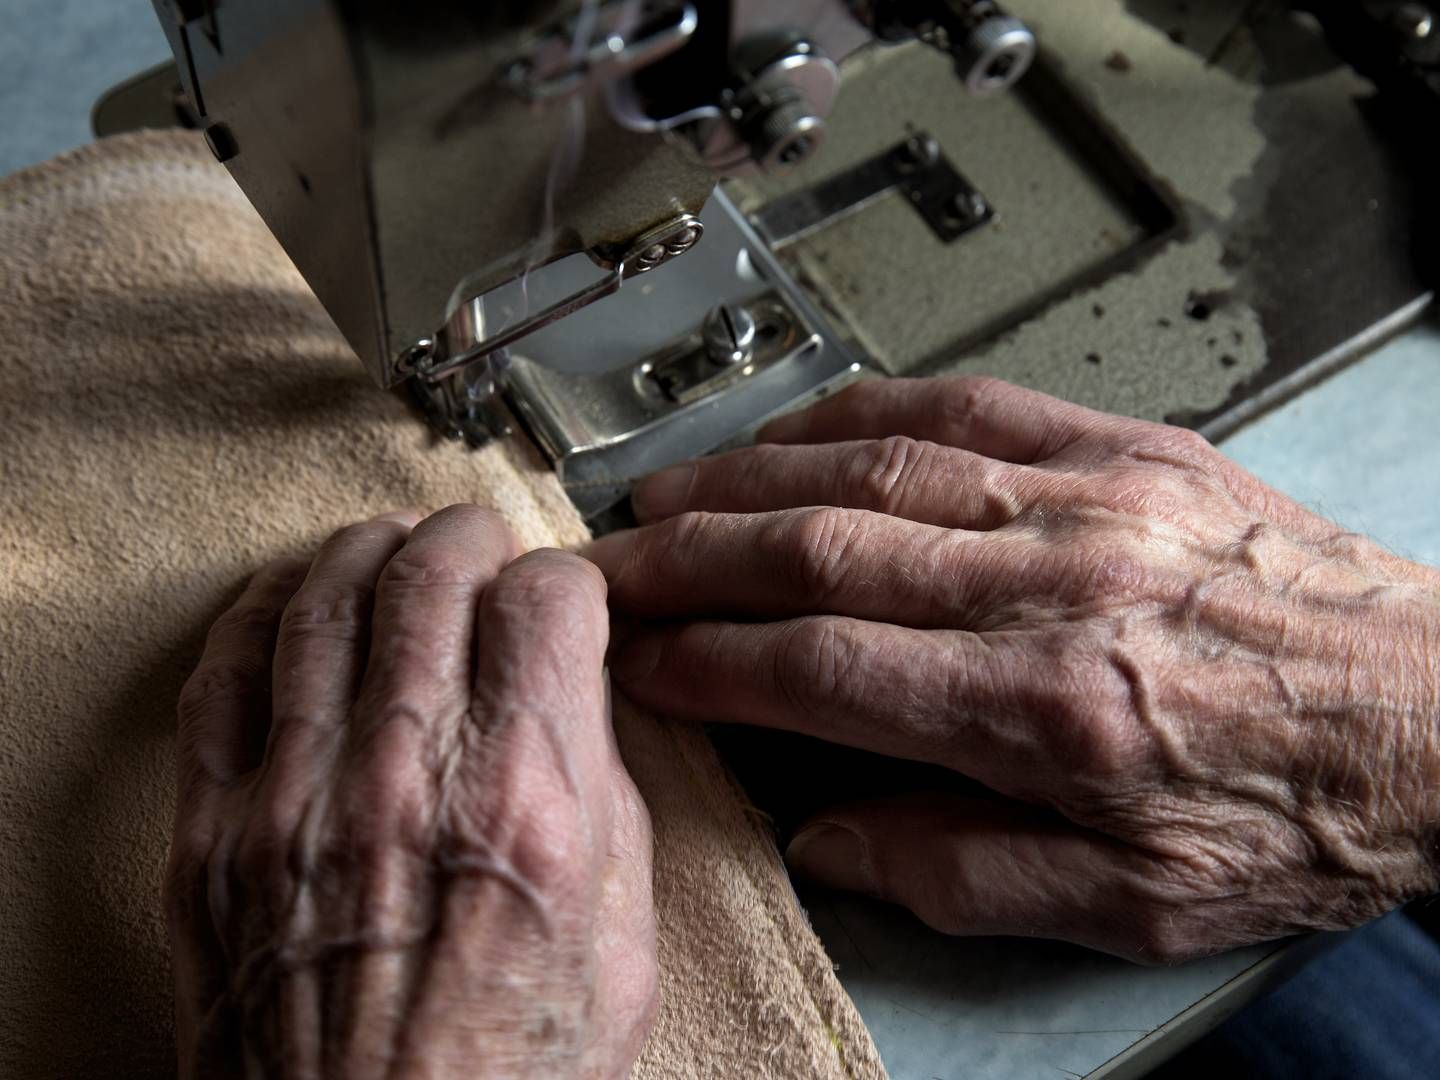 Ældre vælger i højere grad at blive på arbejdsmarkedet. Arkivfoto af en møbelpostrer i arbejde. | Foto: Jacob Ehrbahn